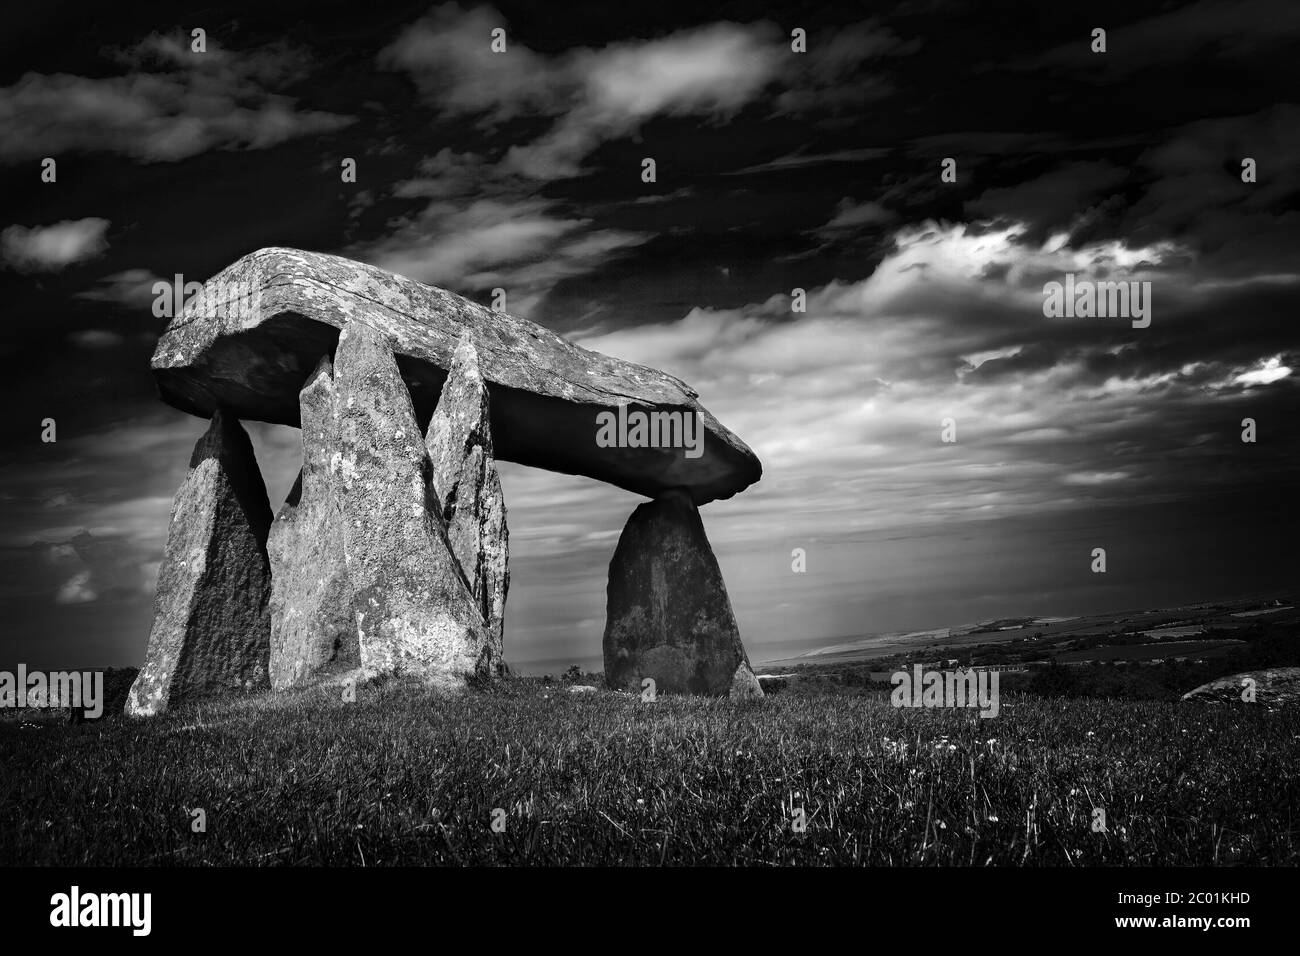 Pentre Ifan eine prähistorische megalithische Steingrabkammer in Pembrokeshire Wales UK ein beliebtes Reiseziel Wahrzeichen Orte monochromes Bild Stockfoto